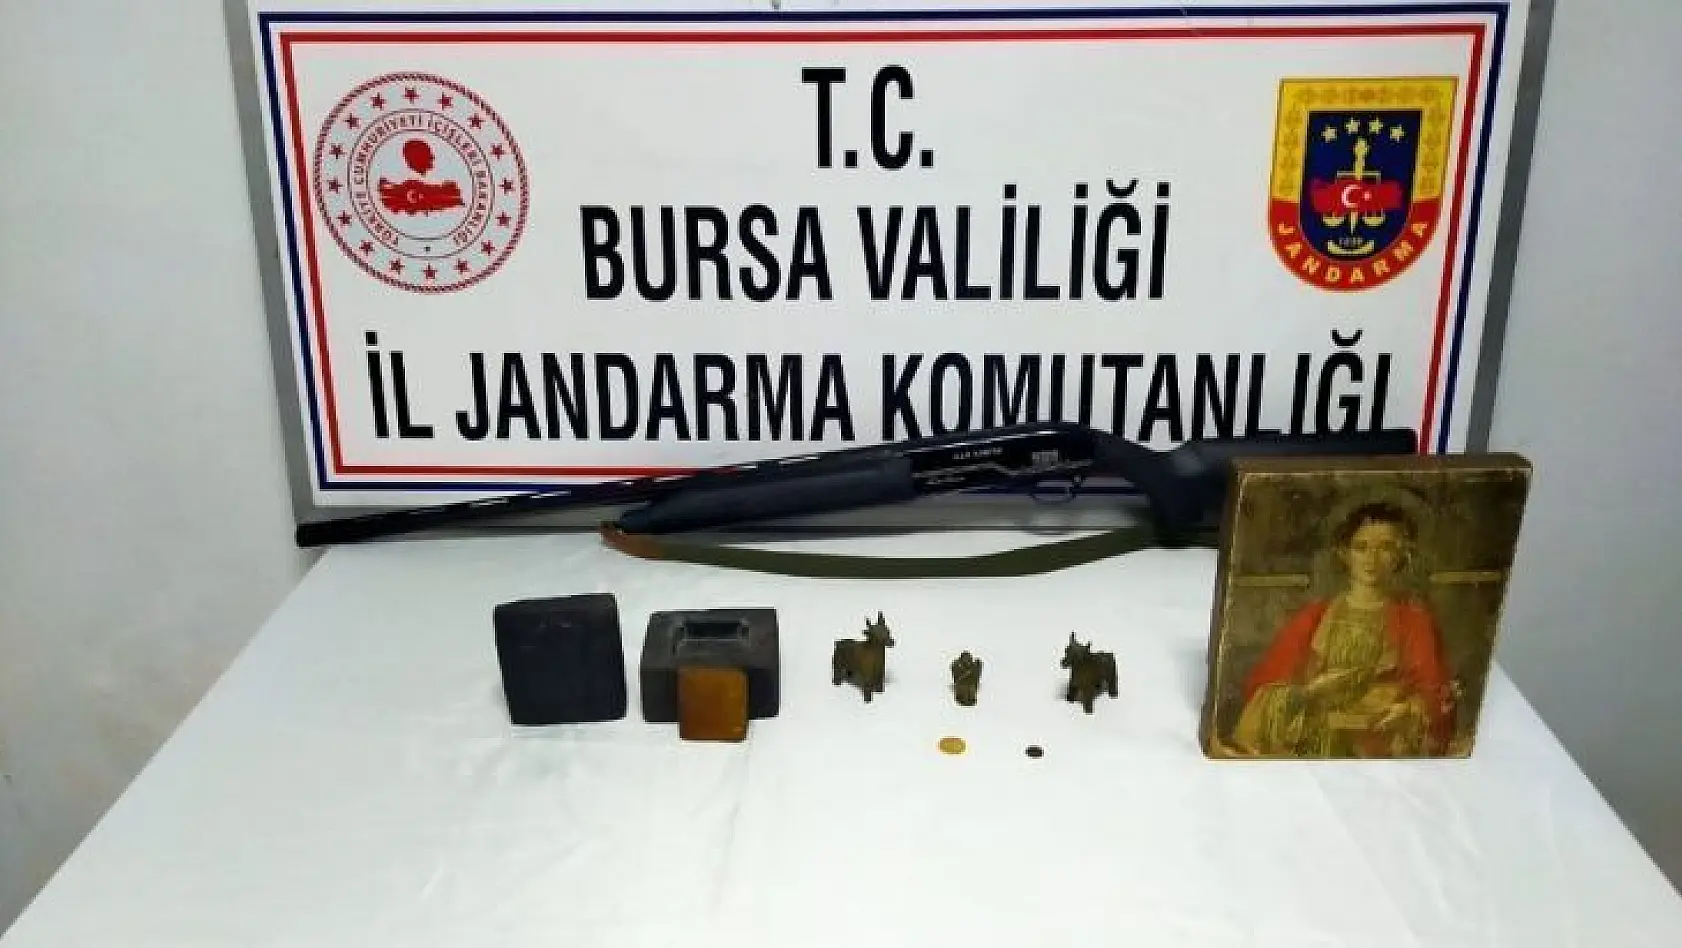 Bursa'da 1 buçuk milyon değerinde tarihi eser ele geçirildi: 6 gözaltı